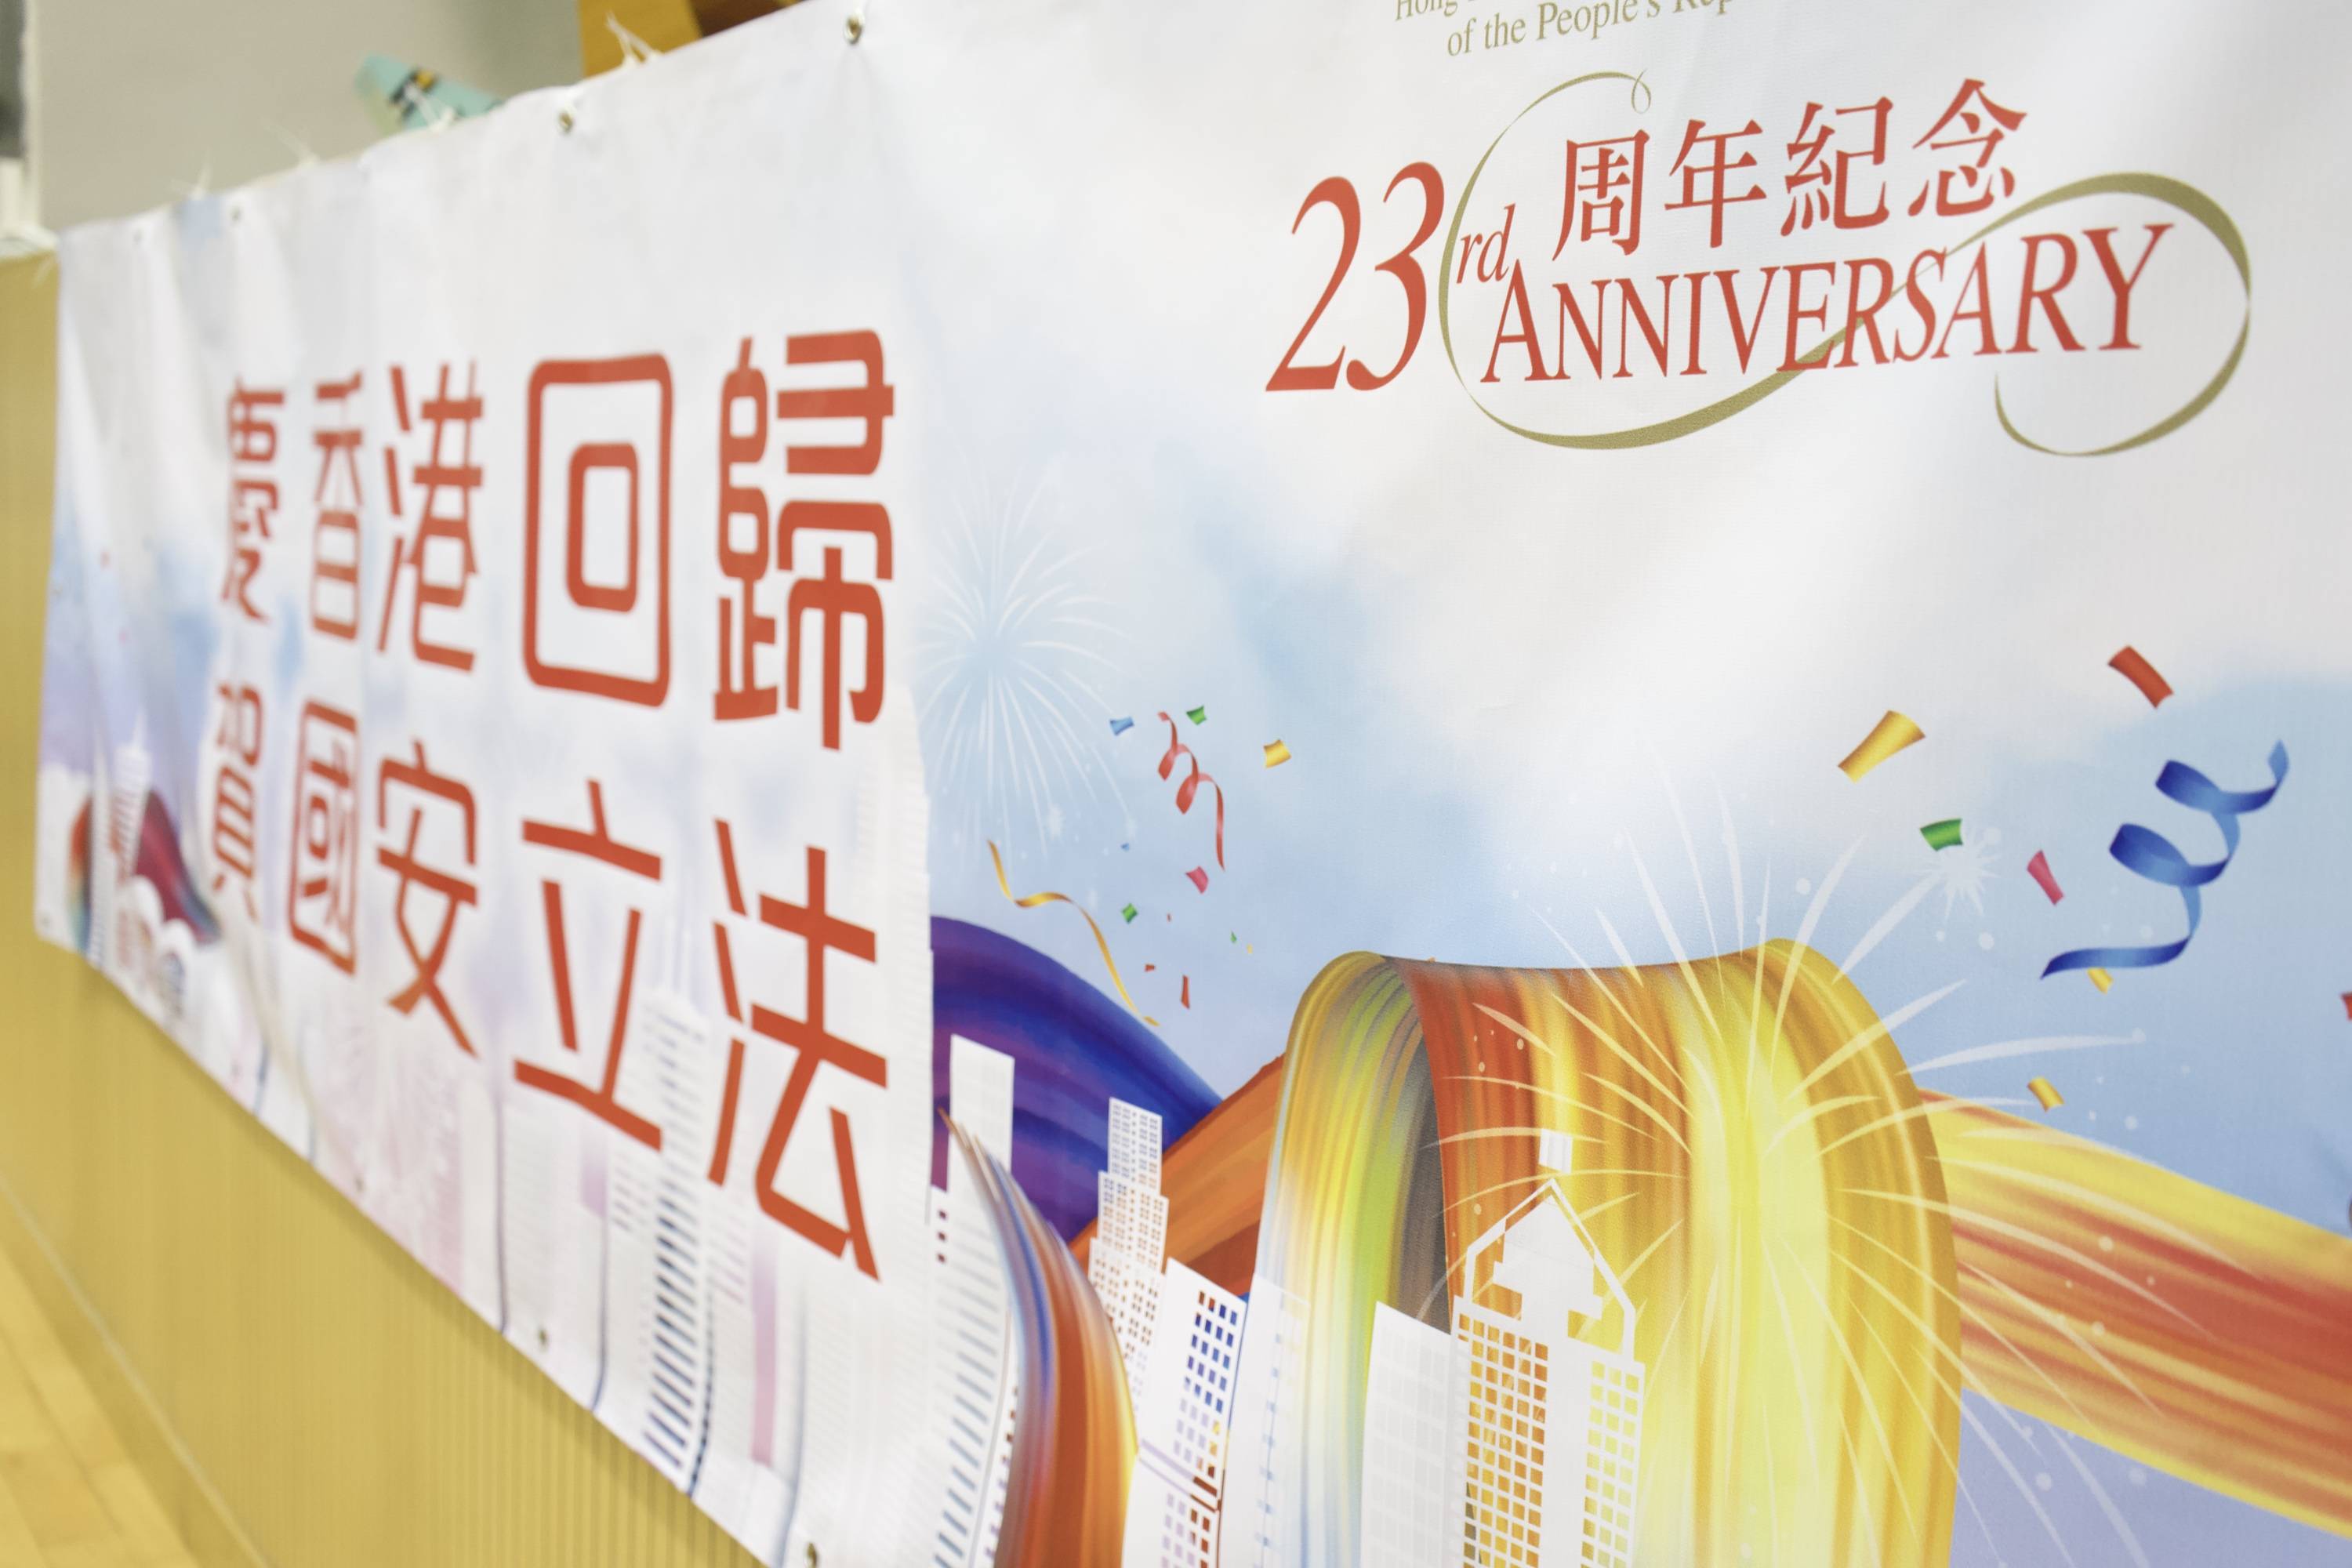 中建五局华南公司广西分公司开展志愿服务系列活动 v2.56.1.99官方正式版